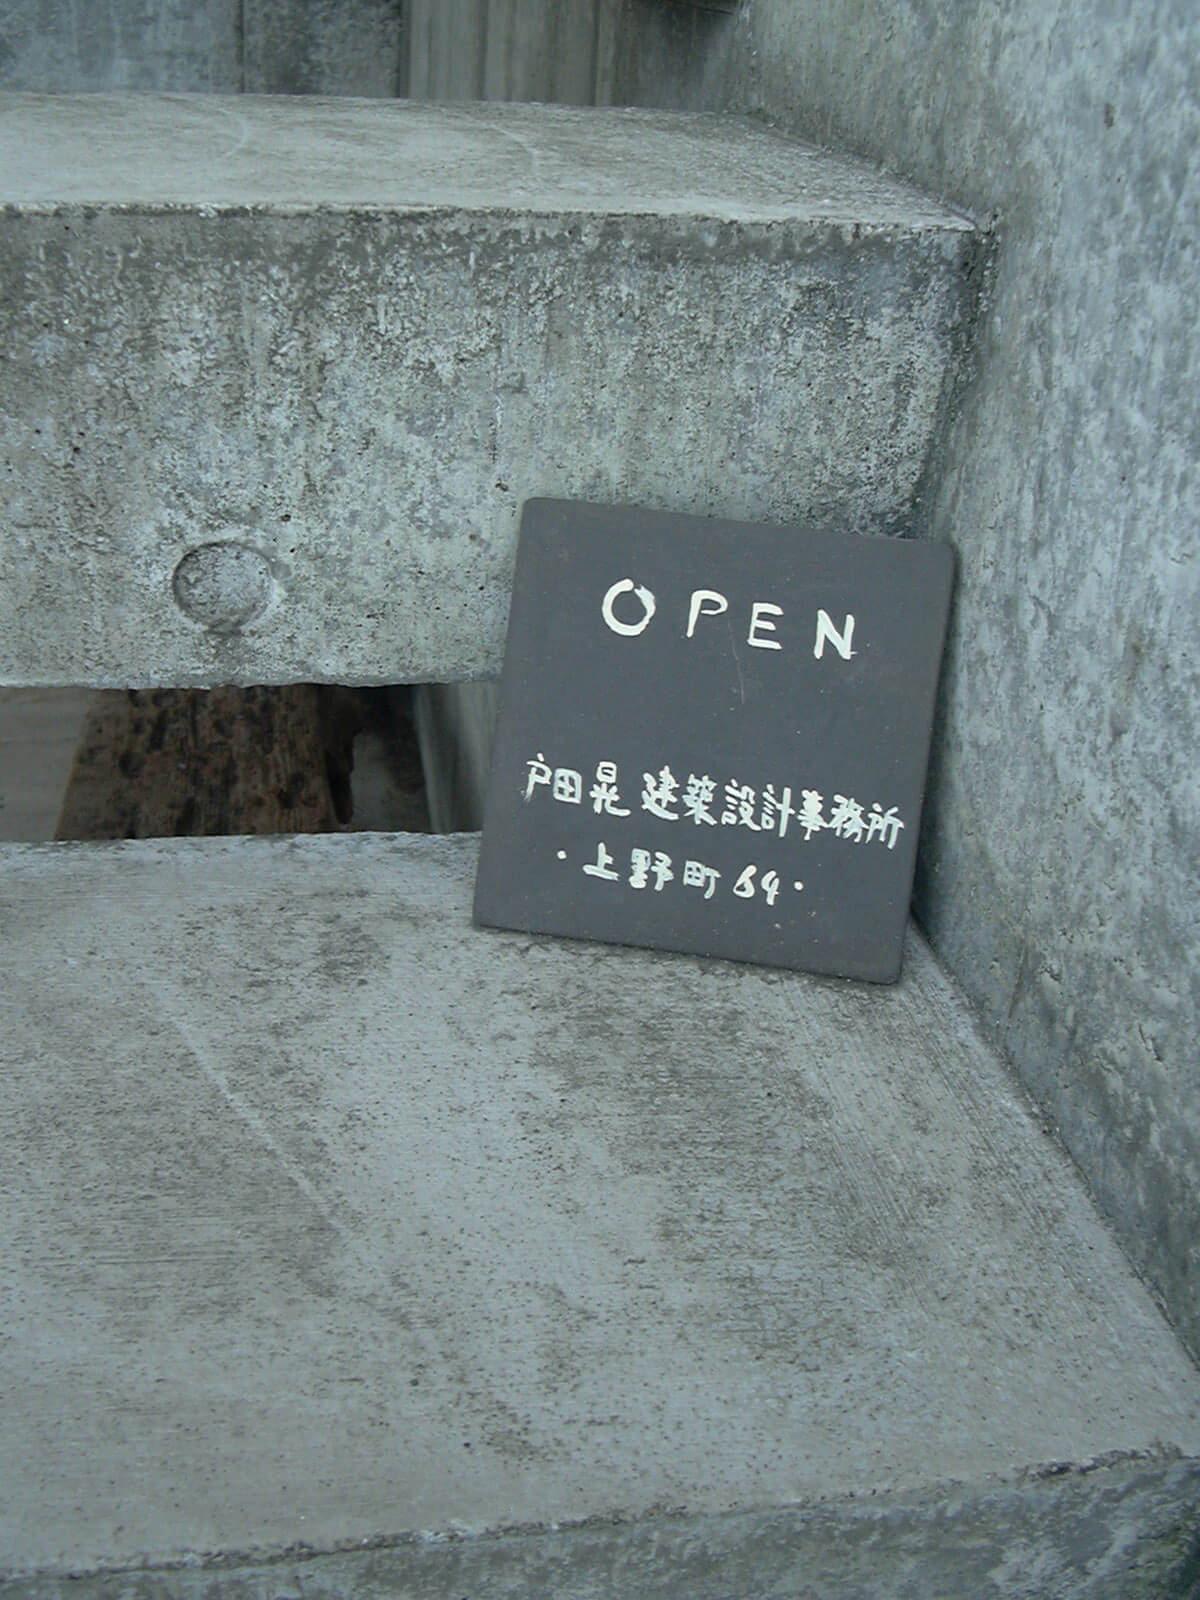 コンクリートの階段に置かれた、黒地に白字で書かれた戸田晃建築設計事務所の小さな看板